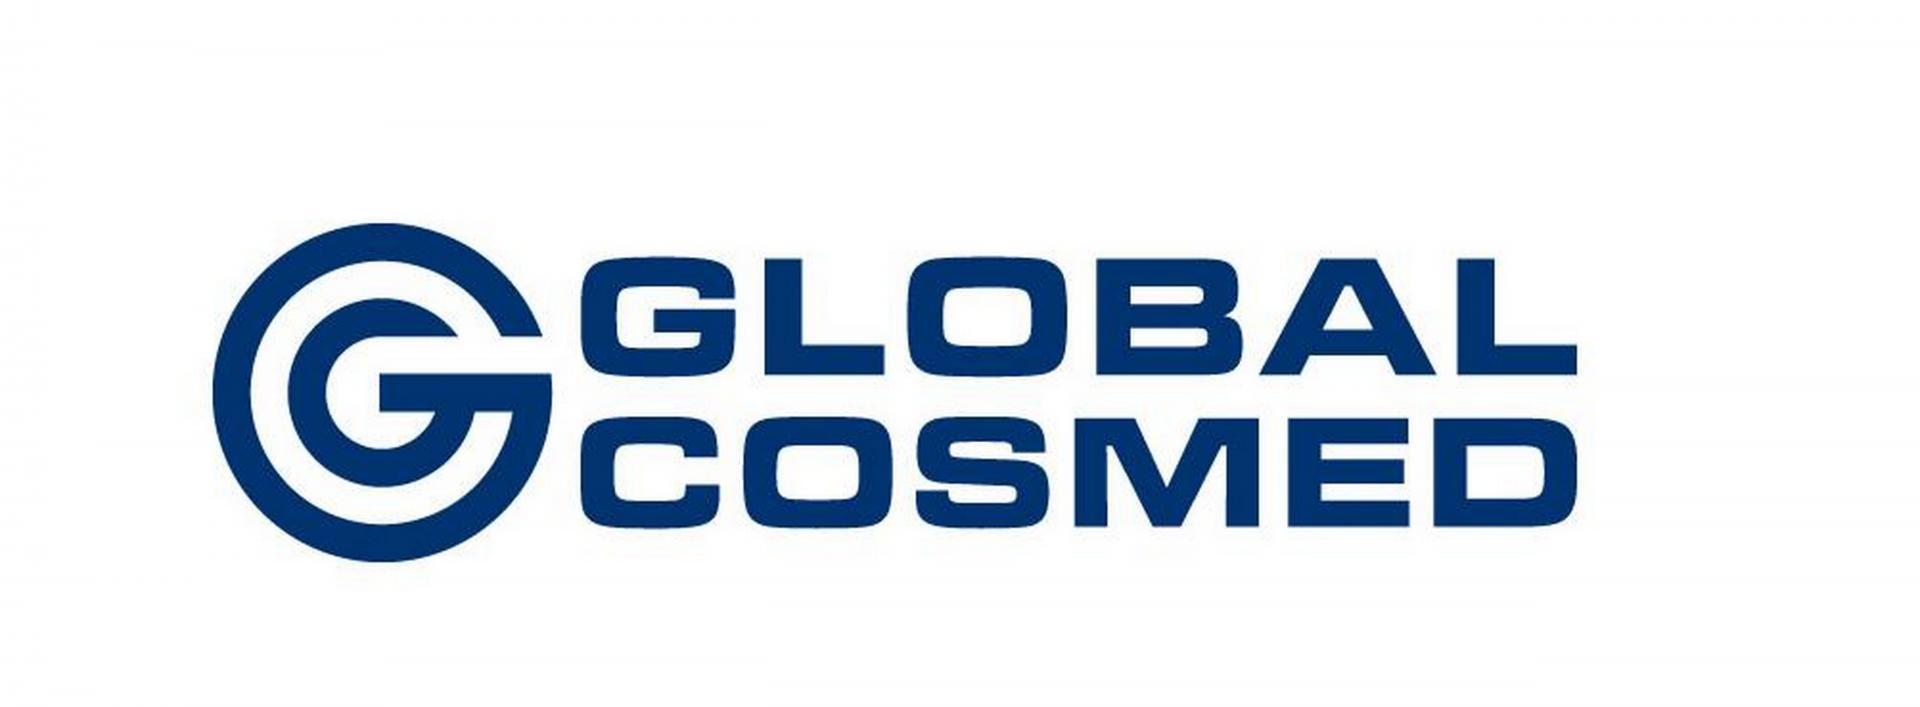 Global Cosmed przyjął Strategię Zrównoważonego Rozwoju